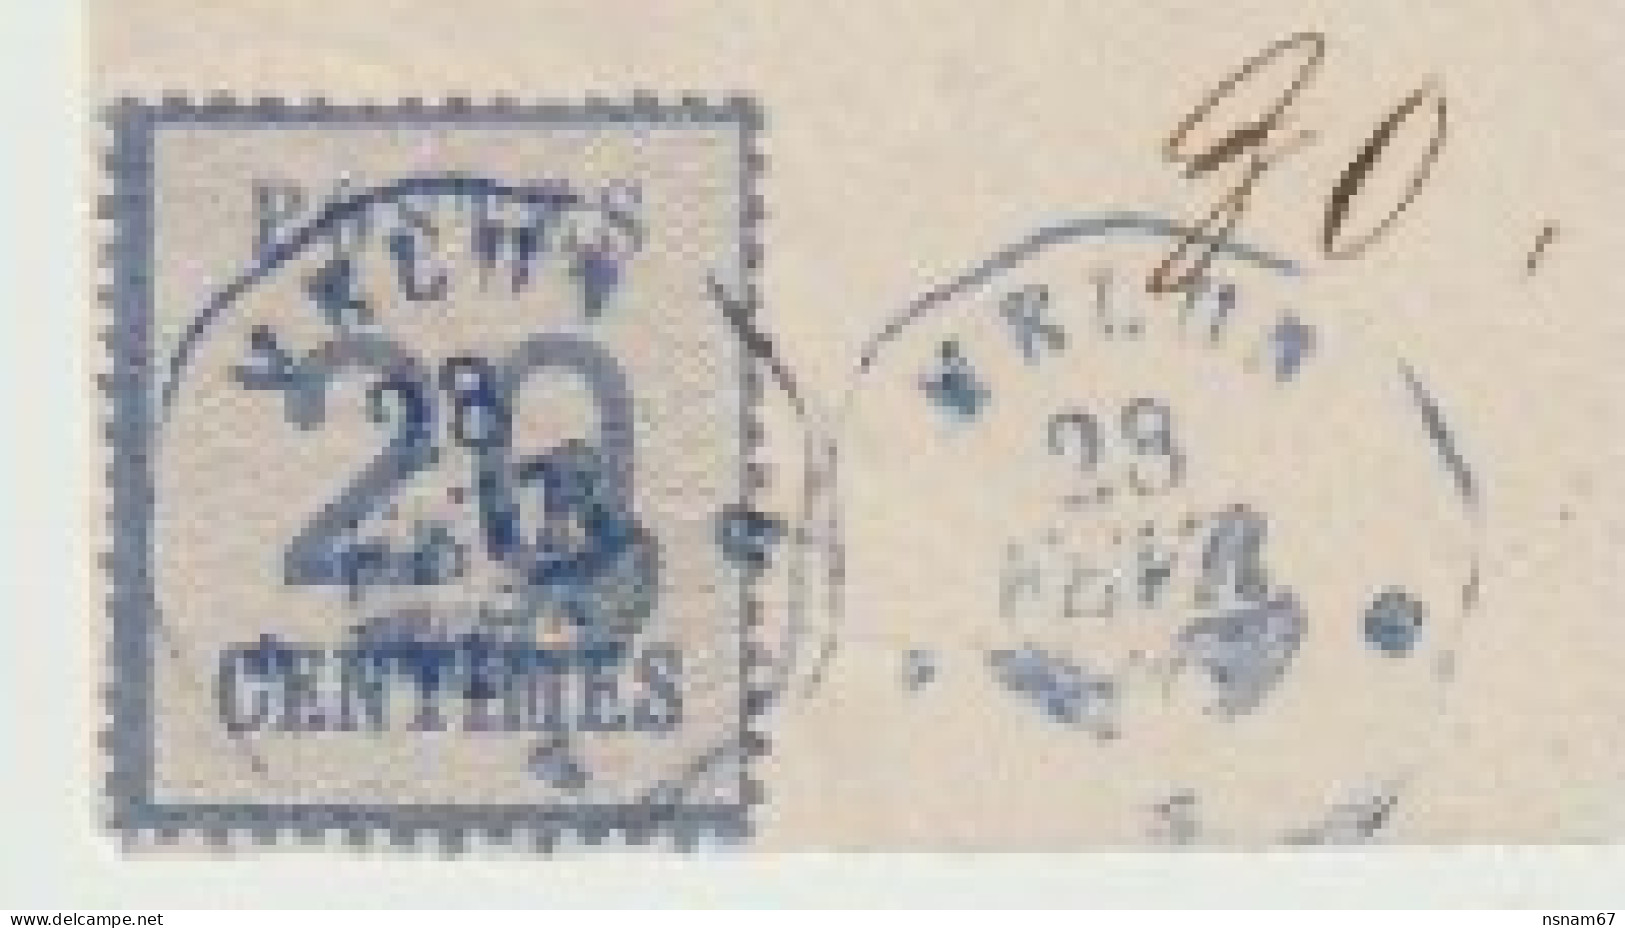 889p - Pli De MELUN (ZO) Pour PARIS (ZNO) - Février 1871 - Cachet Télégraphique Et PC Du GC 2306 (MELUN) Et étoile Bleue - Guerra De 1870